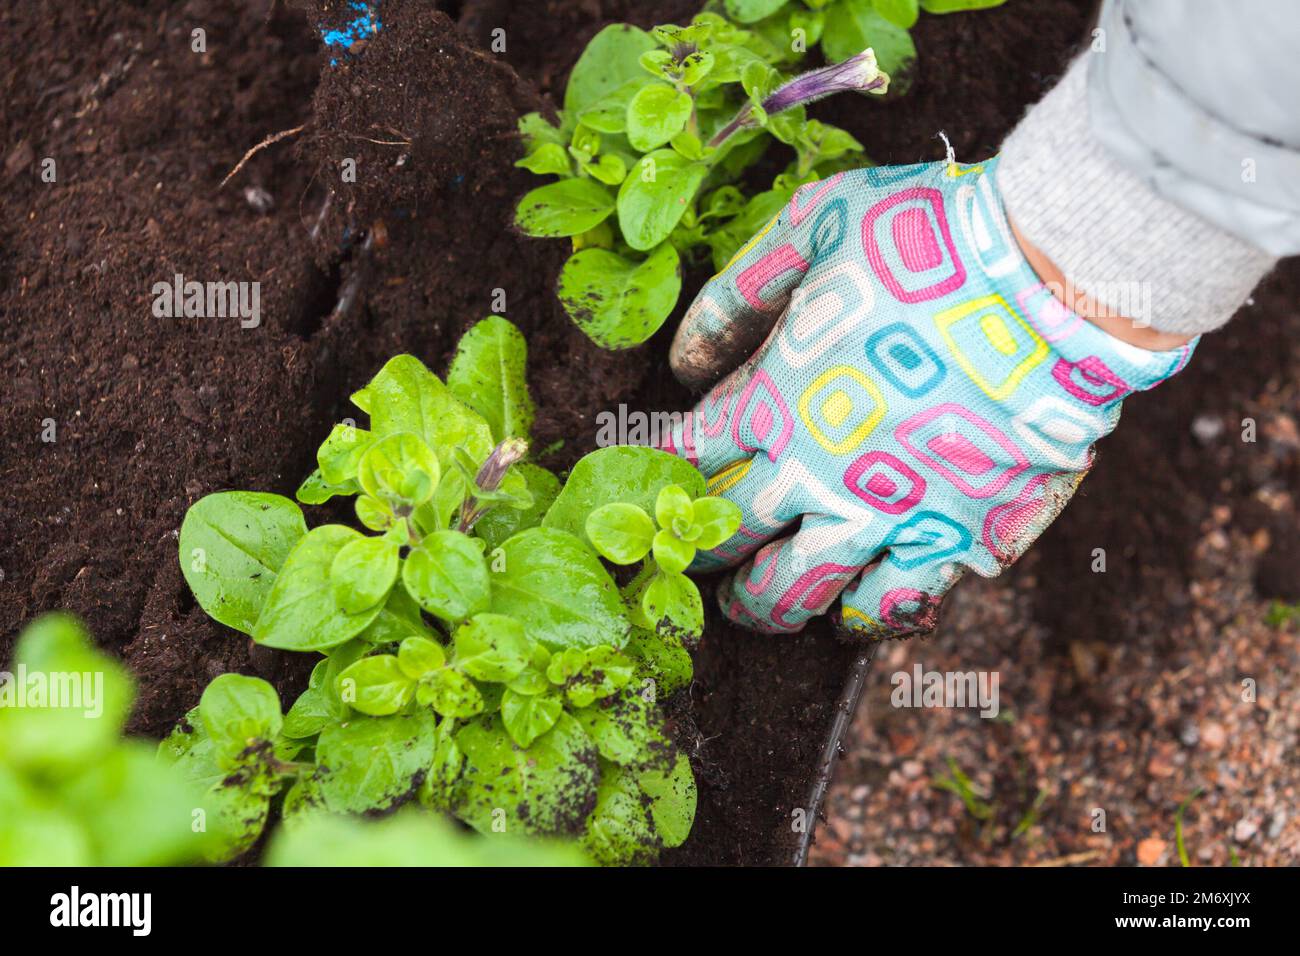 Mani di un giardiniere piantando piantine in pentole decorative, foto ravvicinata con messa a fuoco morbida selettiva Foto Stock